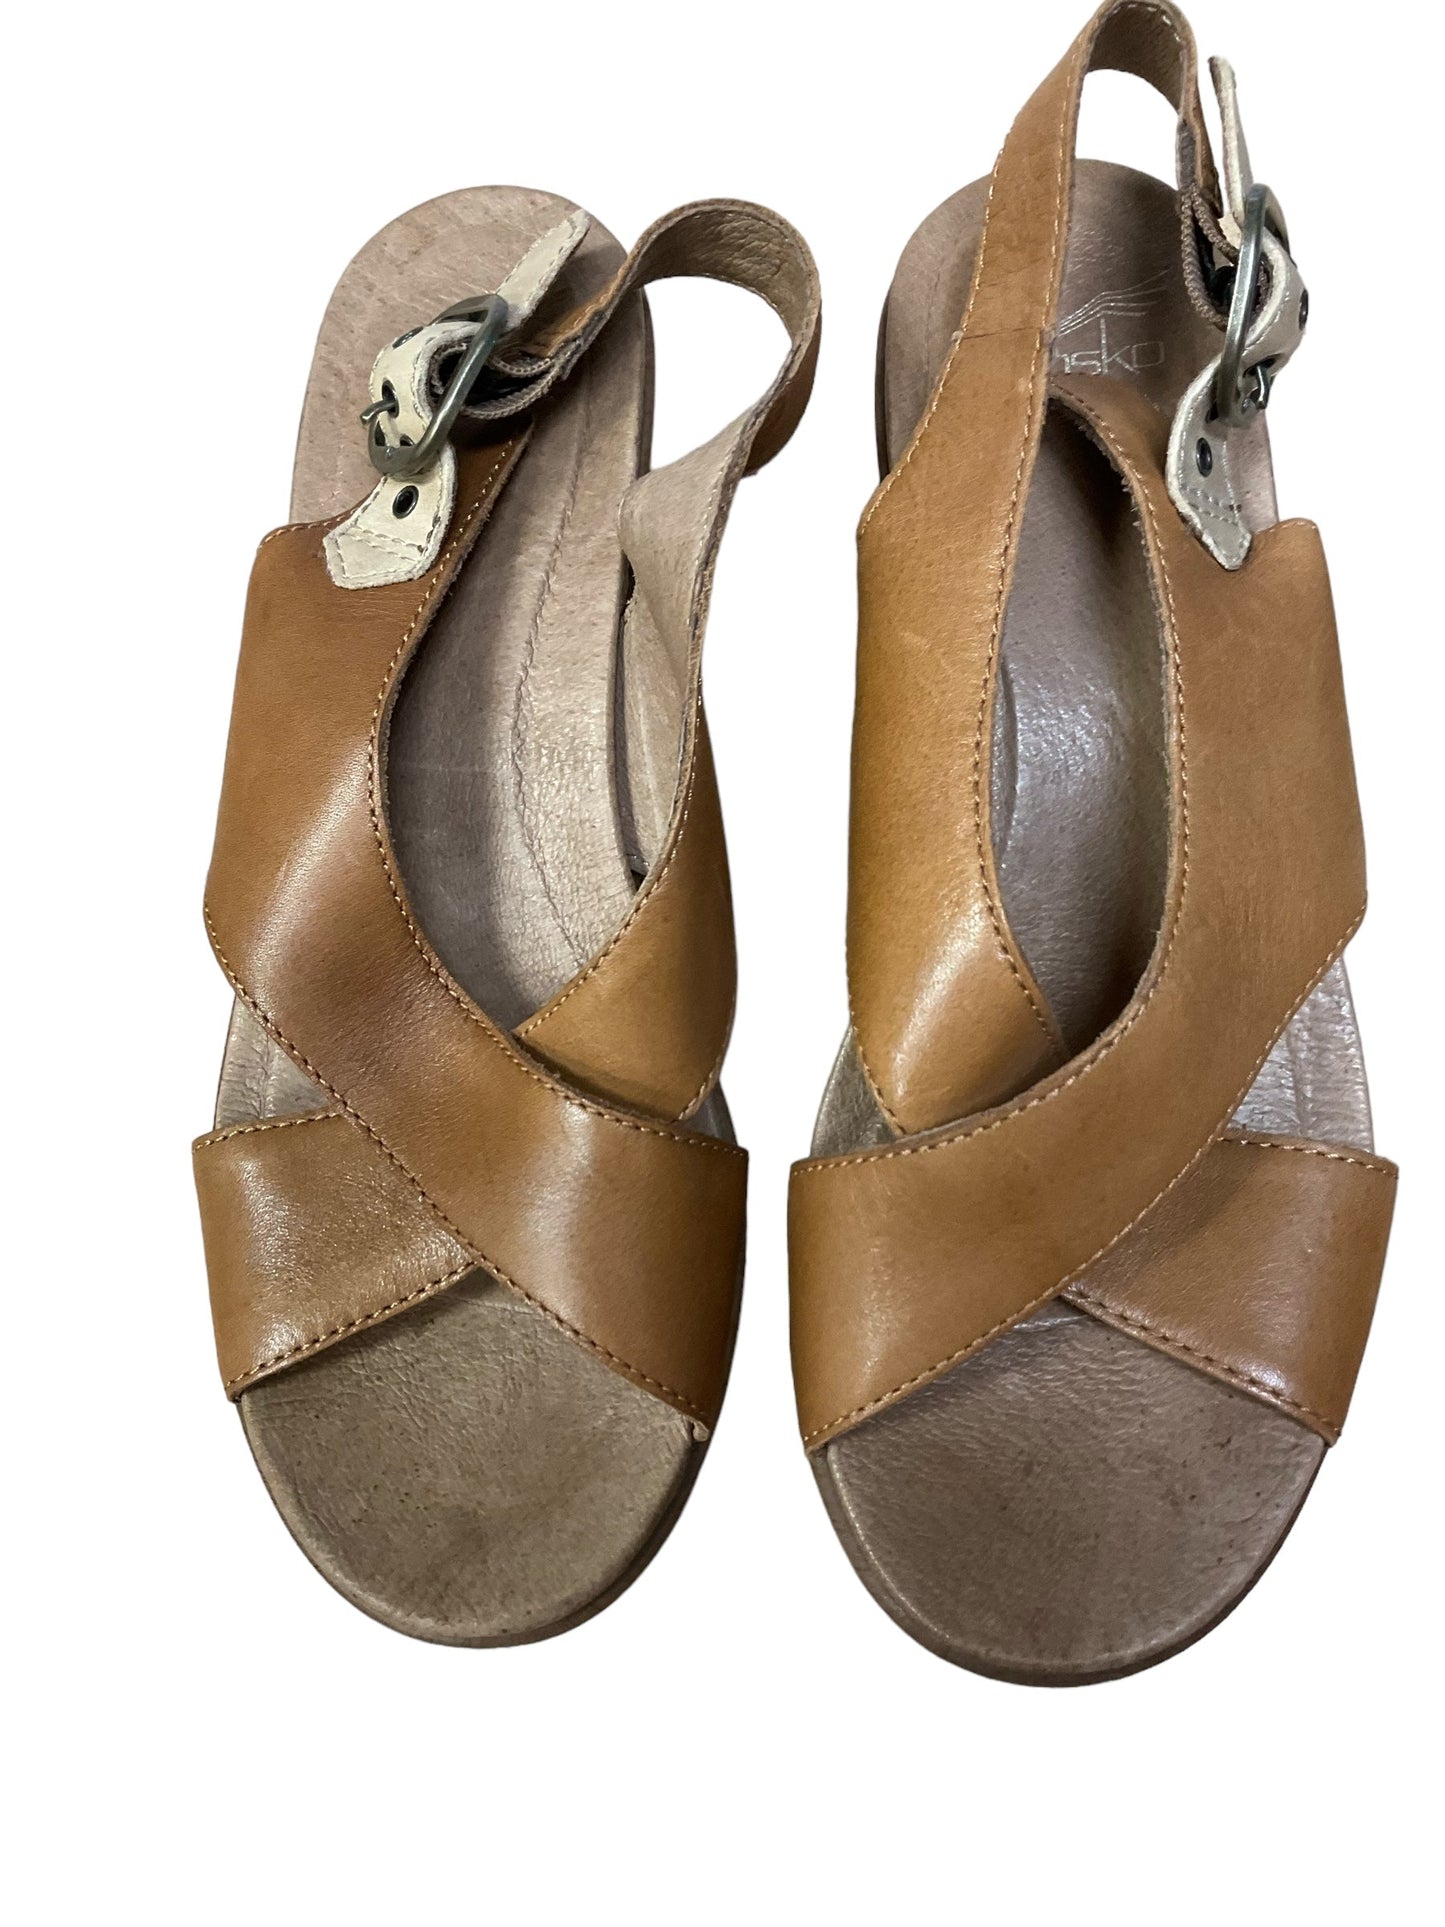 Brown Sandals Heels Block Dansko, Size 7